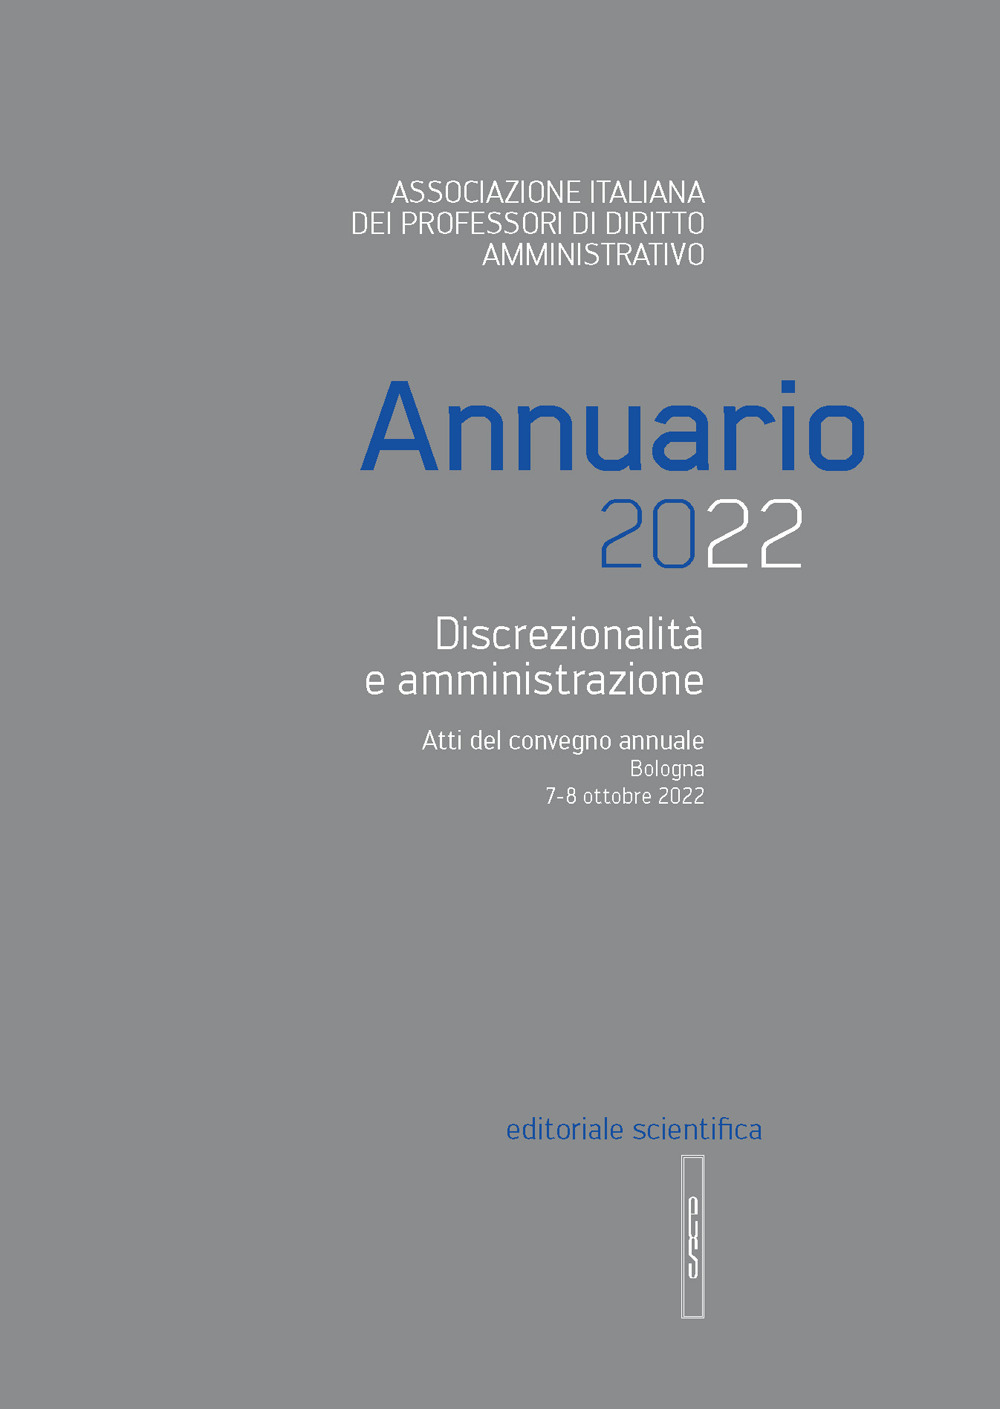 Annuario 2022. Discrezionalità e amministrazione. Atti del convegno annuale, Bologna 7-8 ottobre 2022